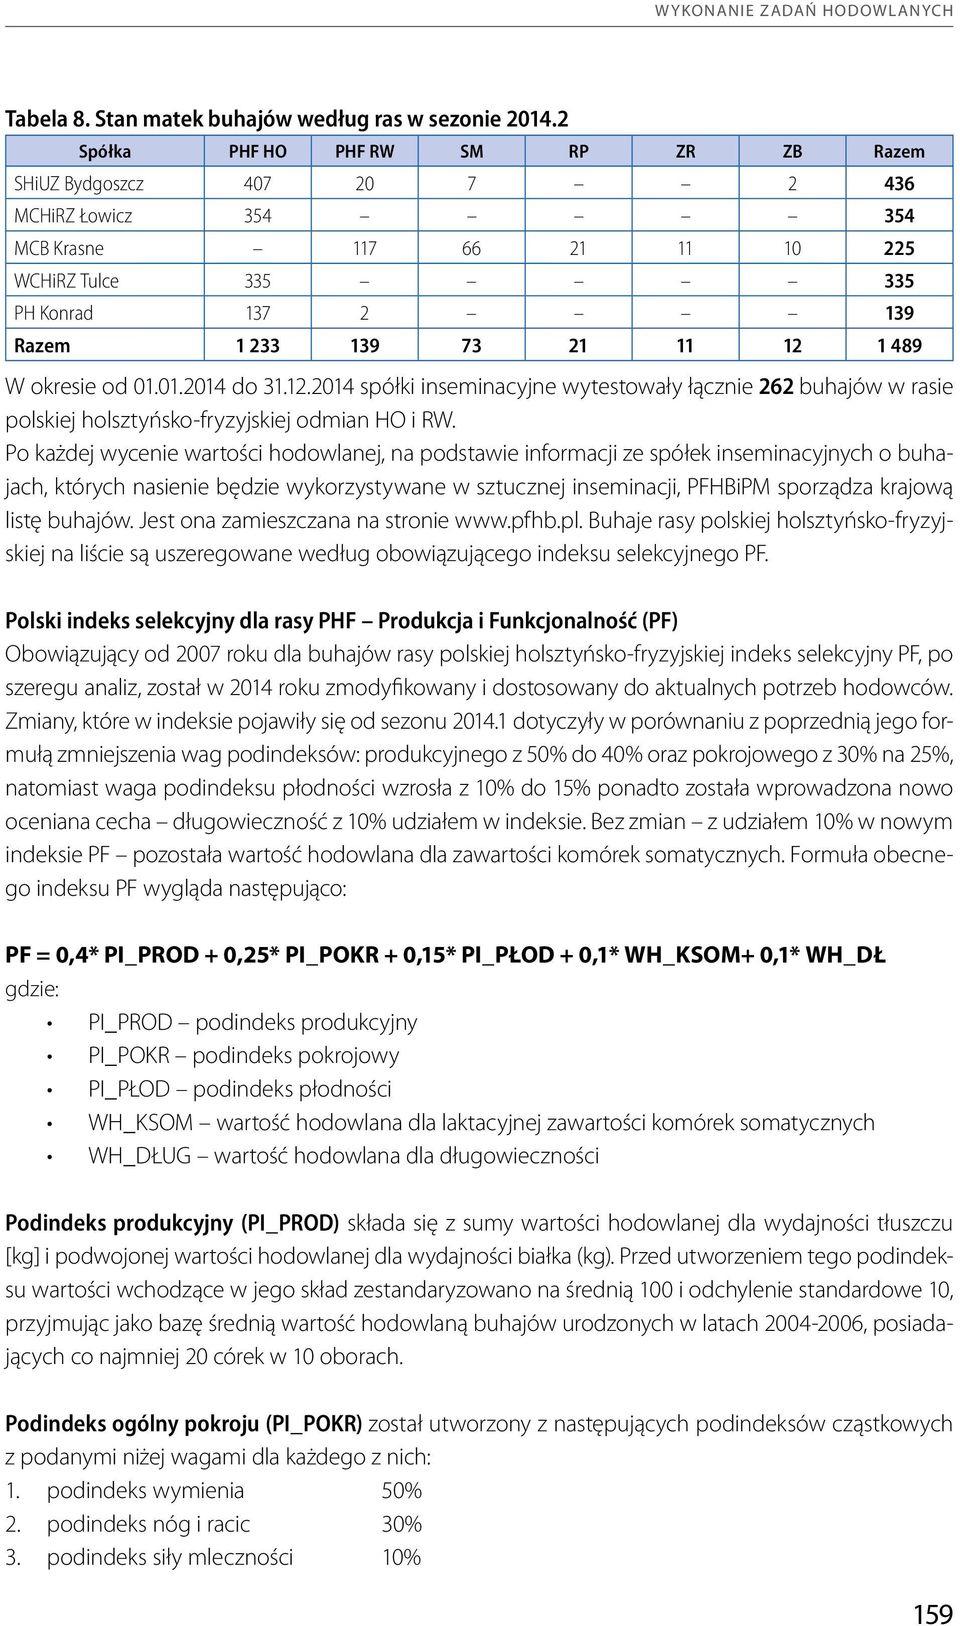 W okresie od 01.01.2014 do 31.12.2014 spółki inseminacyjne wytestowały łącznie 262 buhajów w rasie polskiej holsztyńsko-fryzyjskiej odmian HO i RW.